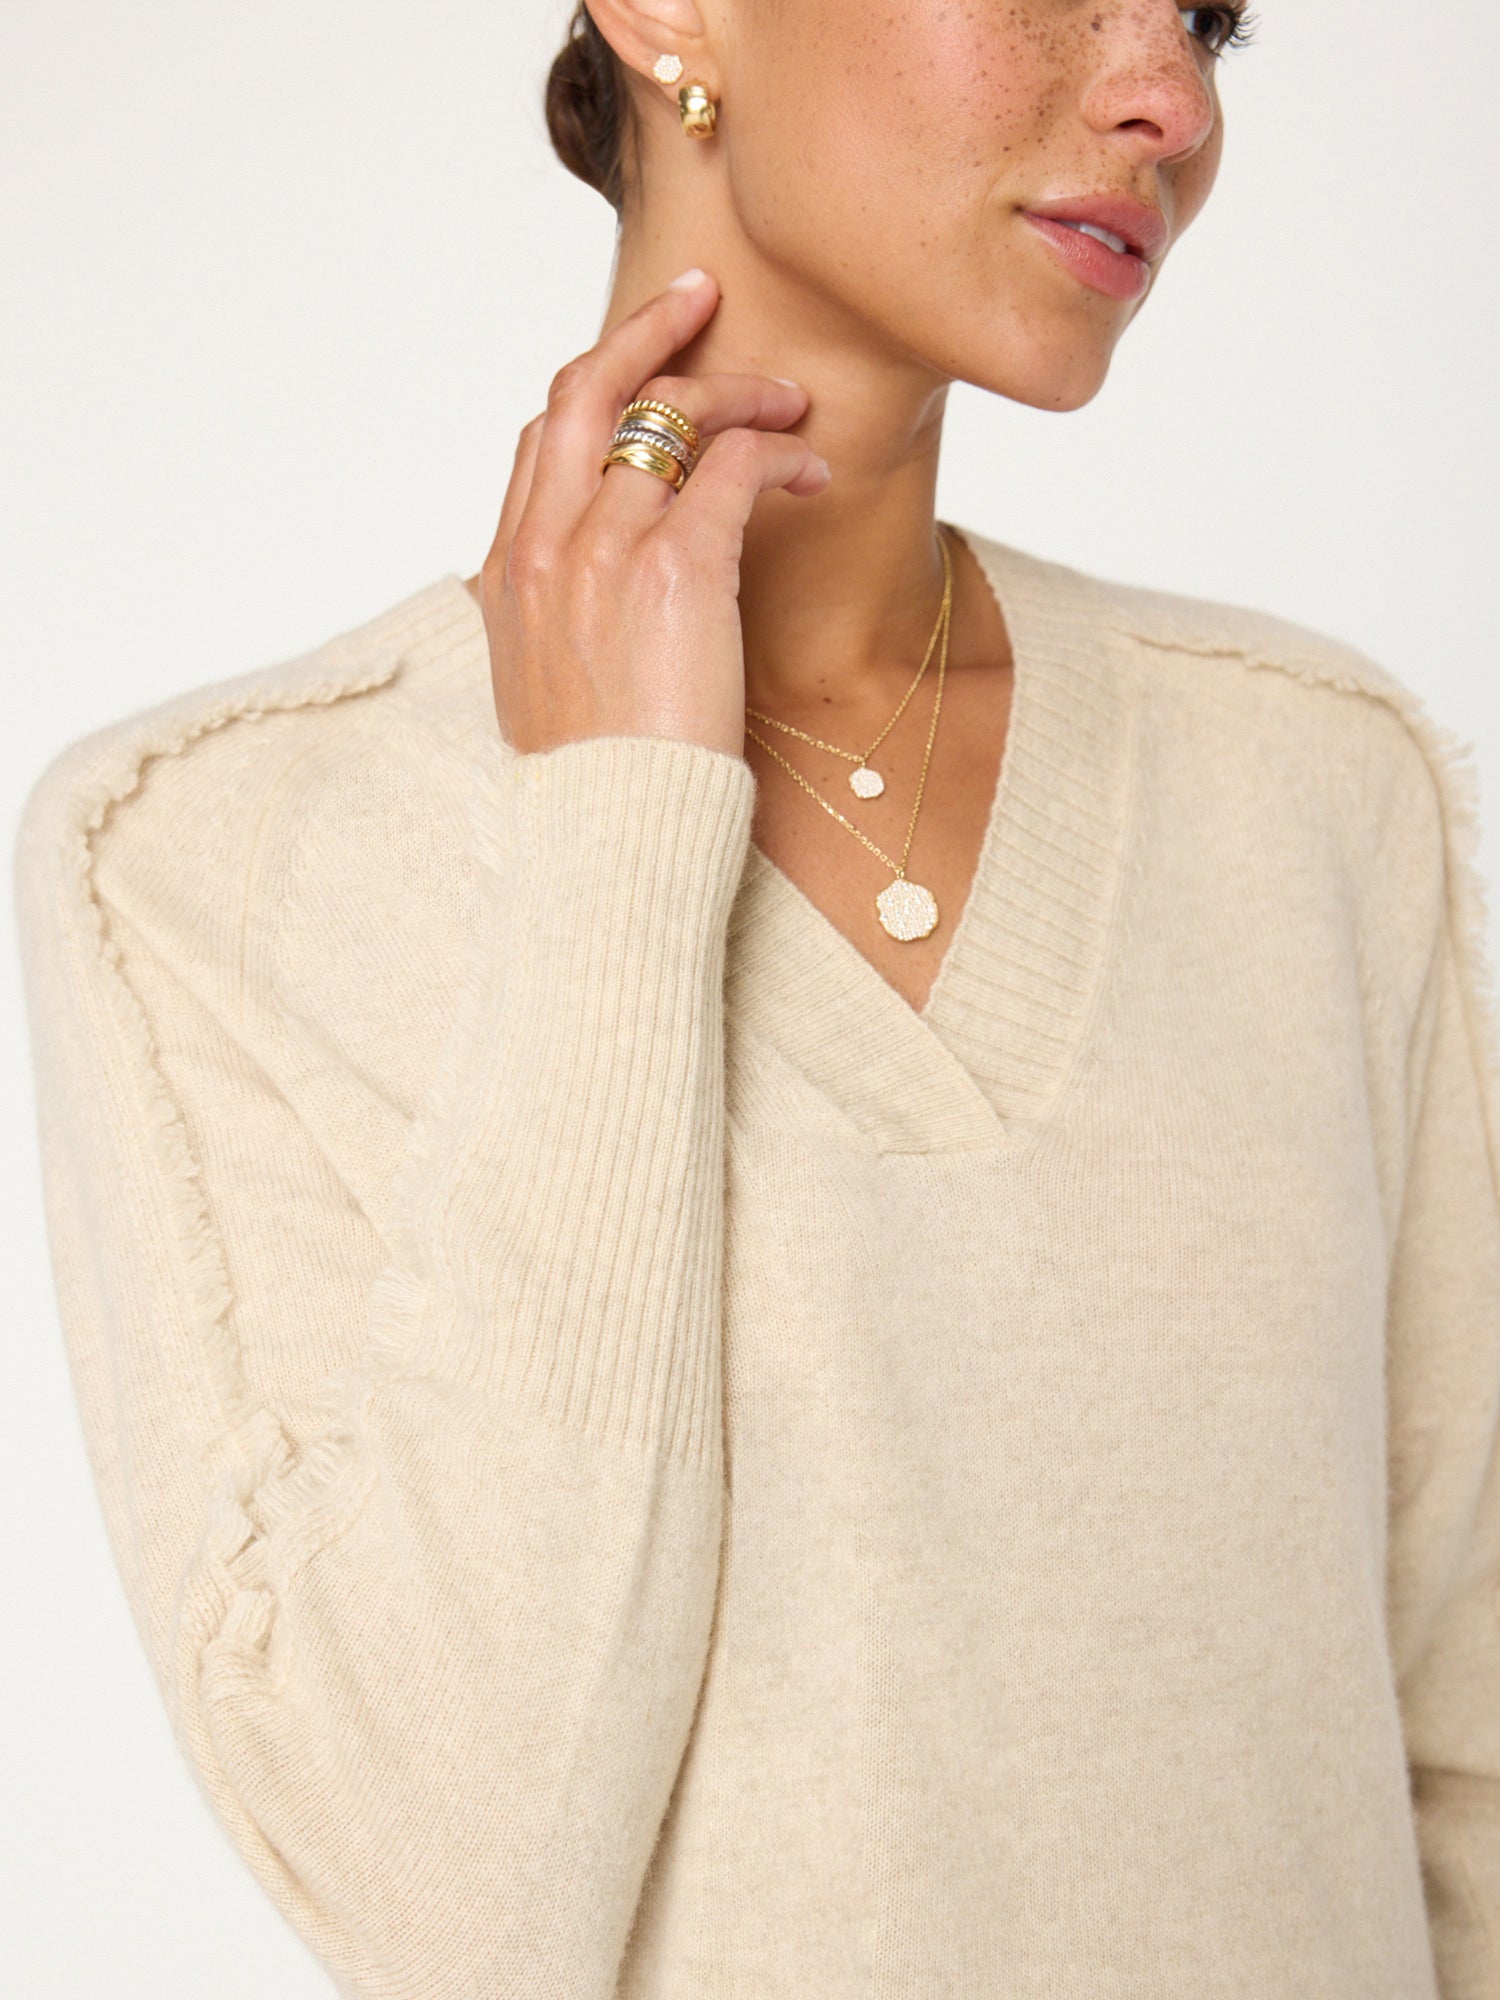 Jolie beige fringe trim v-neck sweater close up